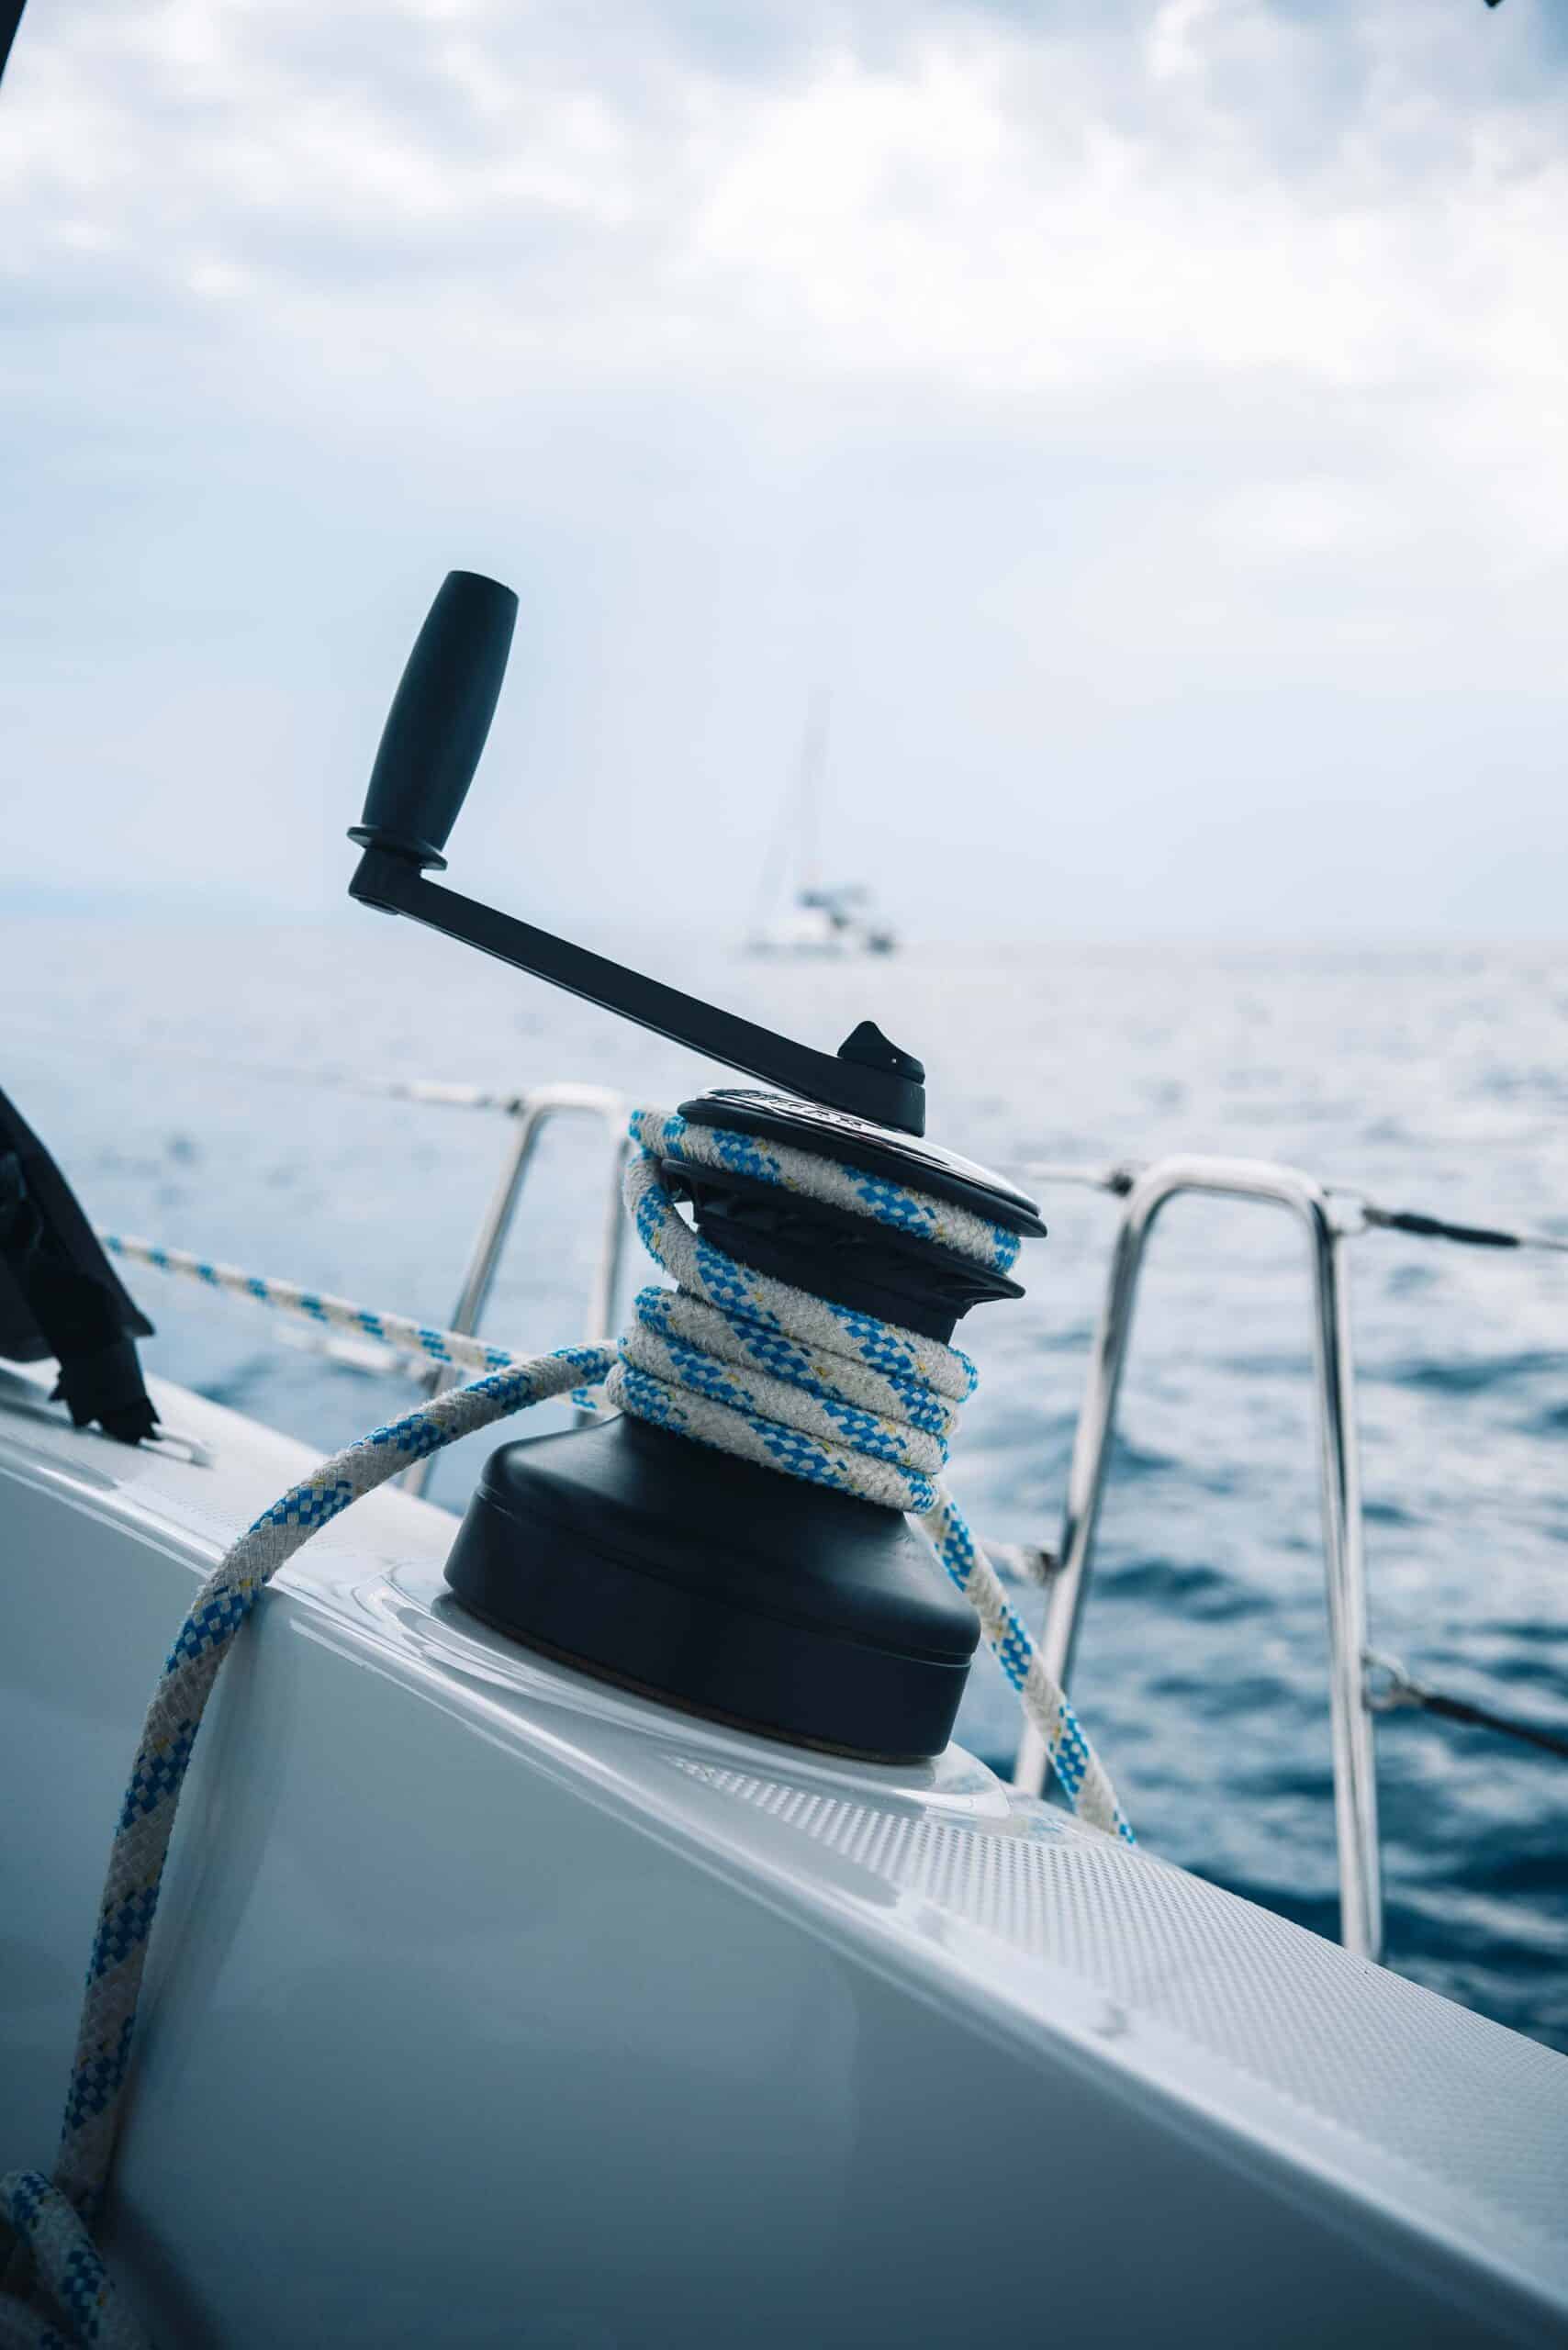 Nahaufnahme einer Winde auf einem Segelboot während eines Segelurlaubs, um die ein blau-weißes Seil gewickelt ist. Das Boot liegt auf dem Wasser, darüber ein bewölkter Himmel. Die Horizontlinie und ein weiteres Segelboot in der Ferne sind sichtbar und fangen die Essenz eines ruhigen Segeltörns ein.